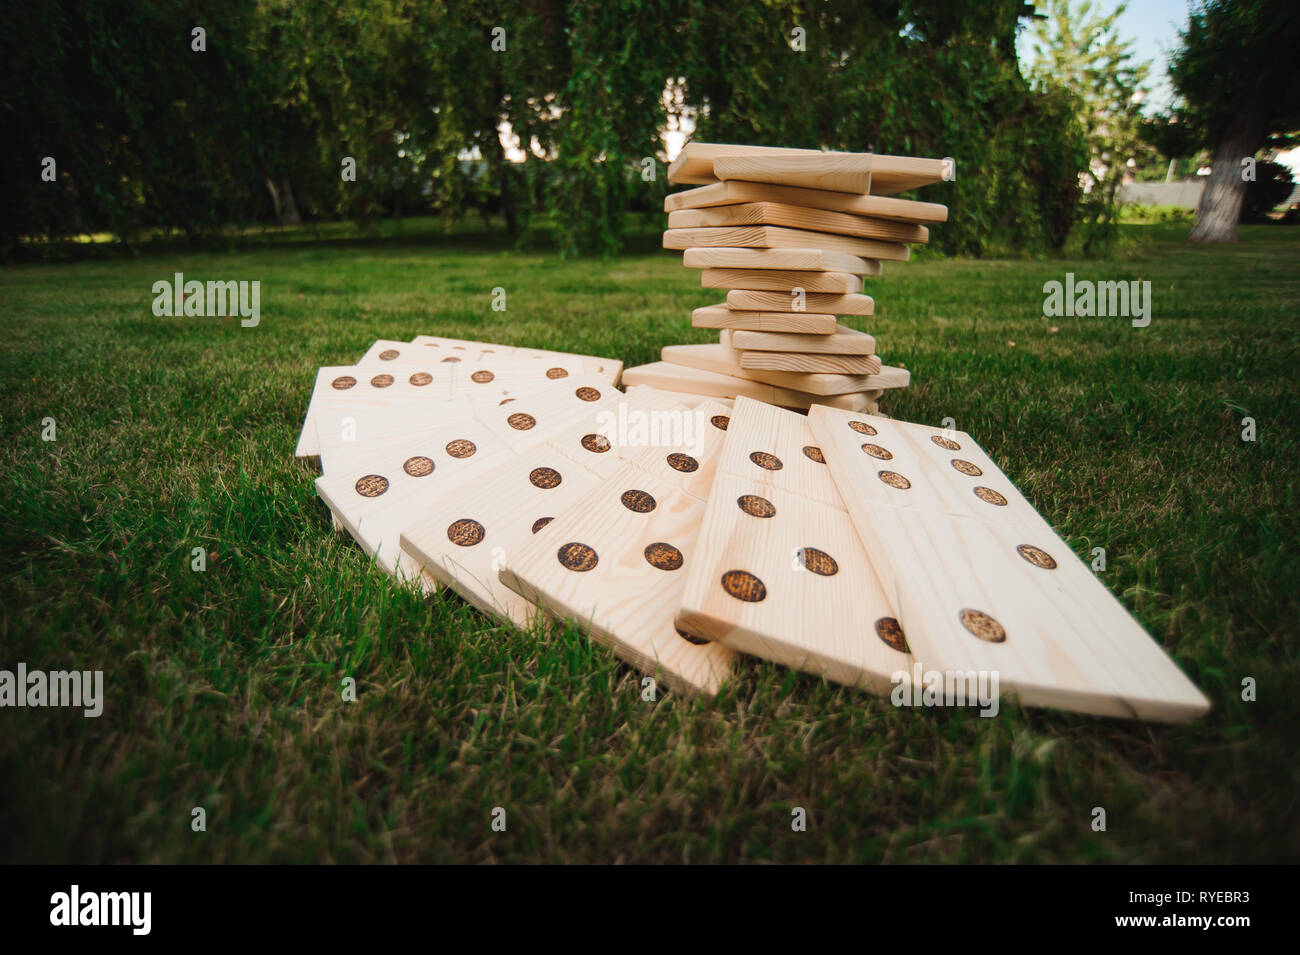 Giochi all'aperto - domino, gigante gioco all'aperto sull'erba verde Foto Stock